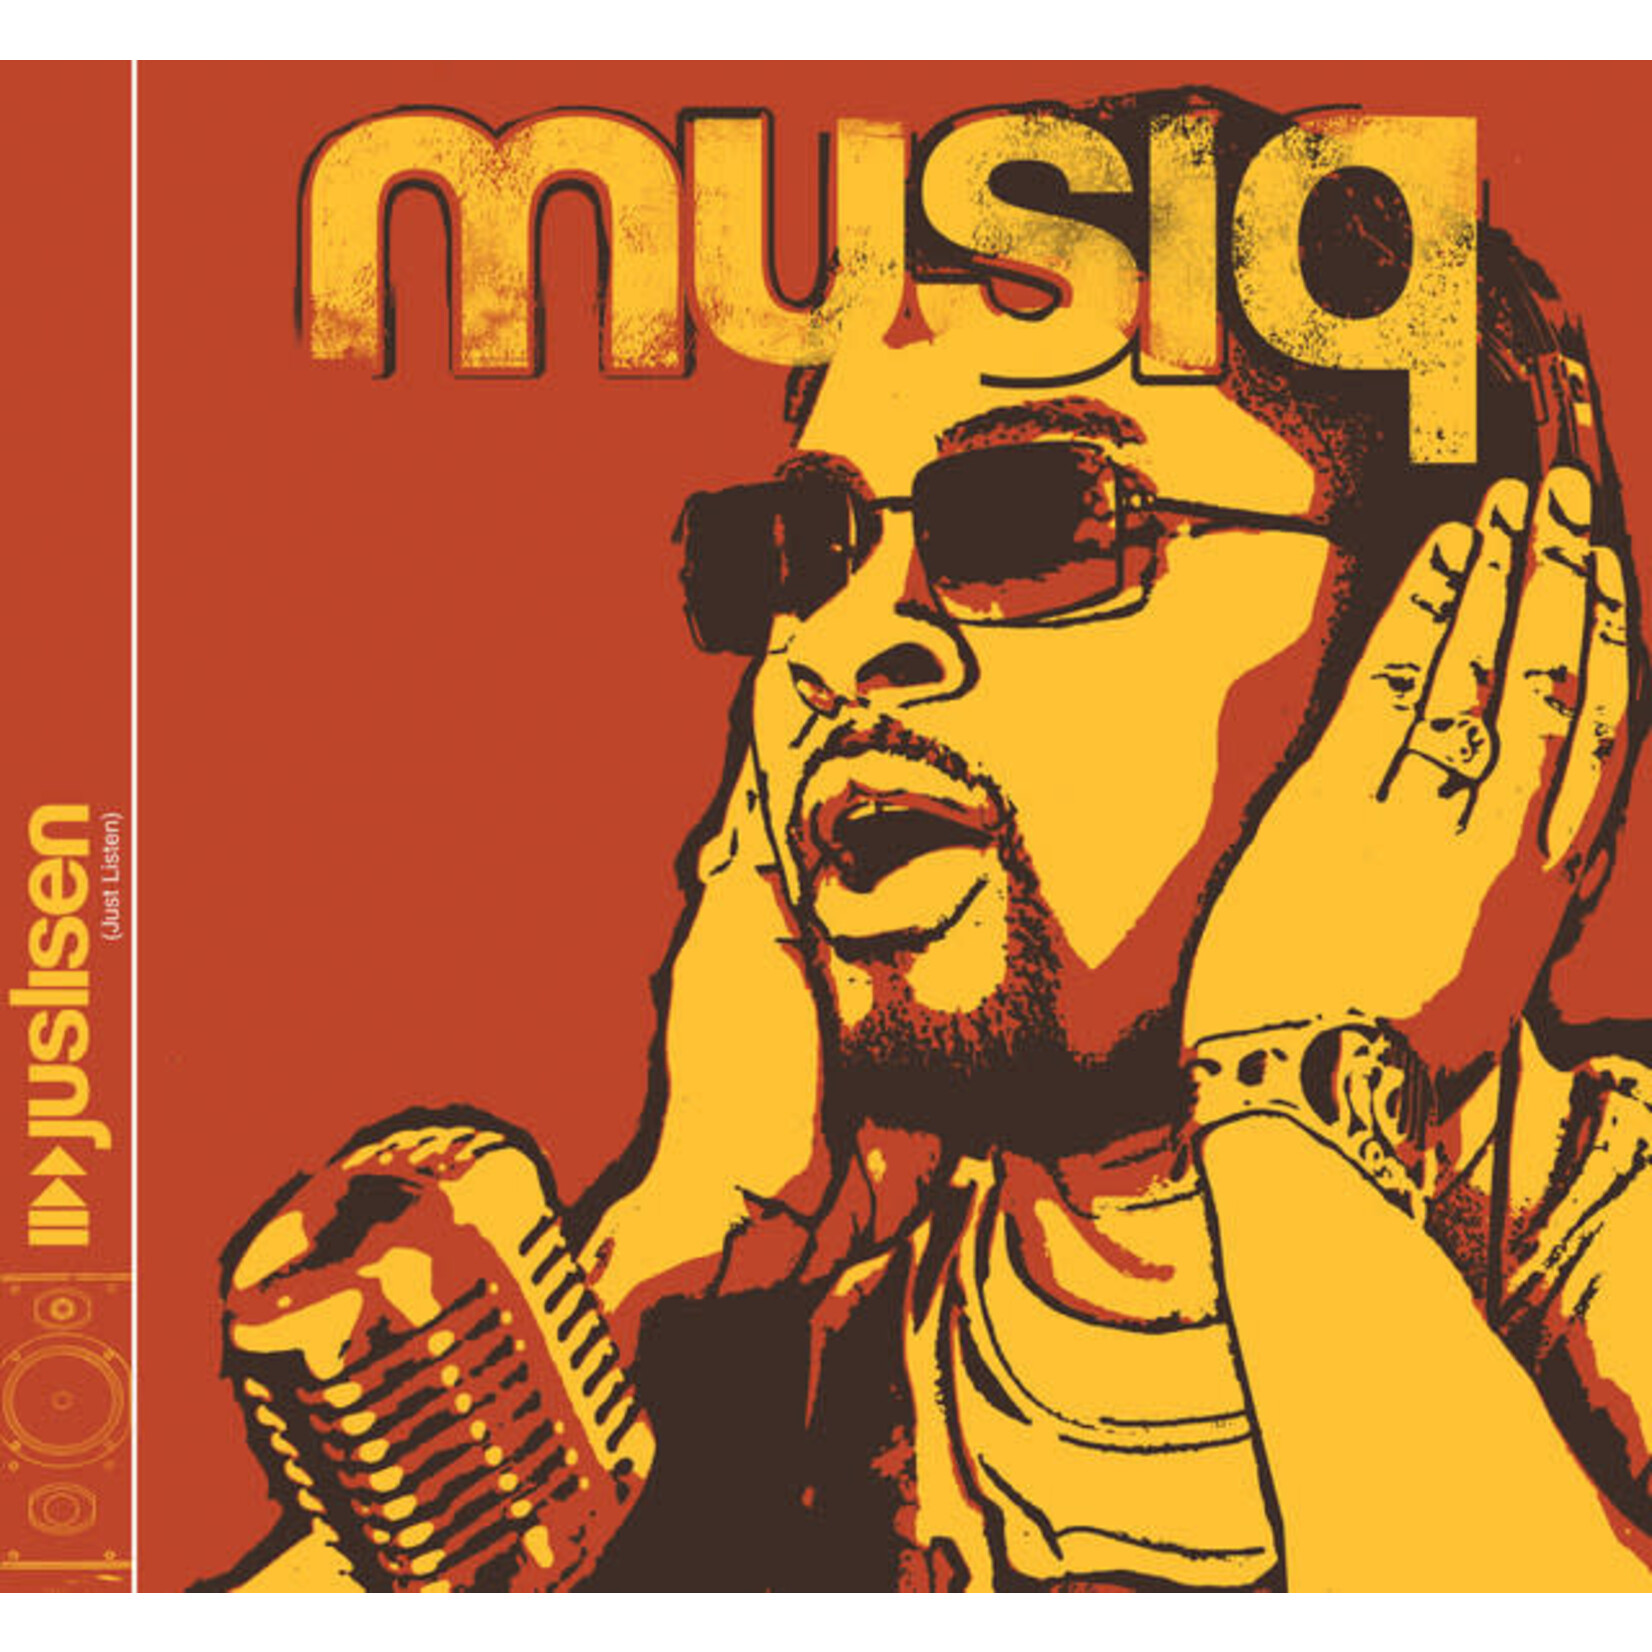 Musiq Soulchild - Juslisen [USED CD]